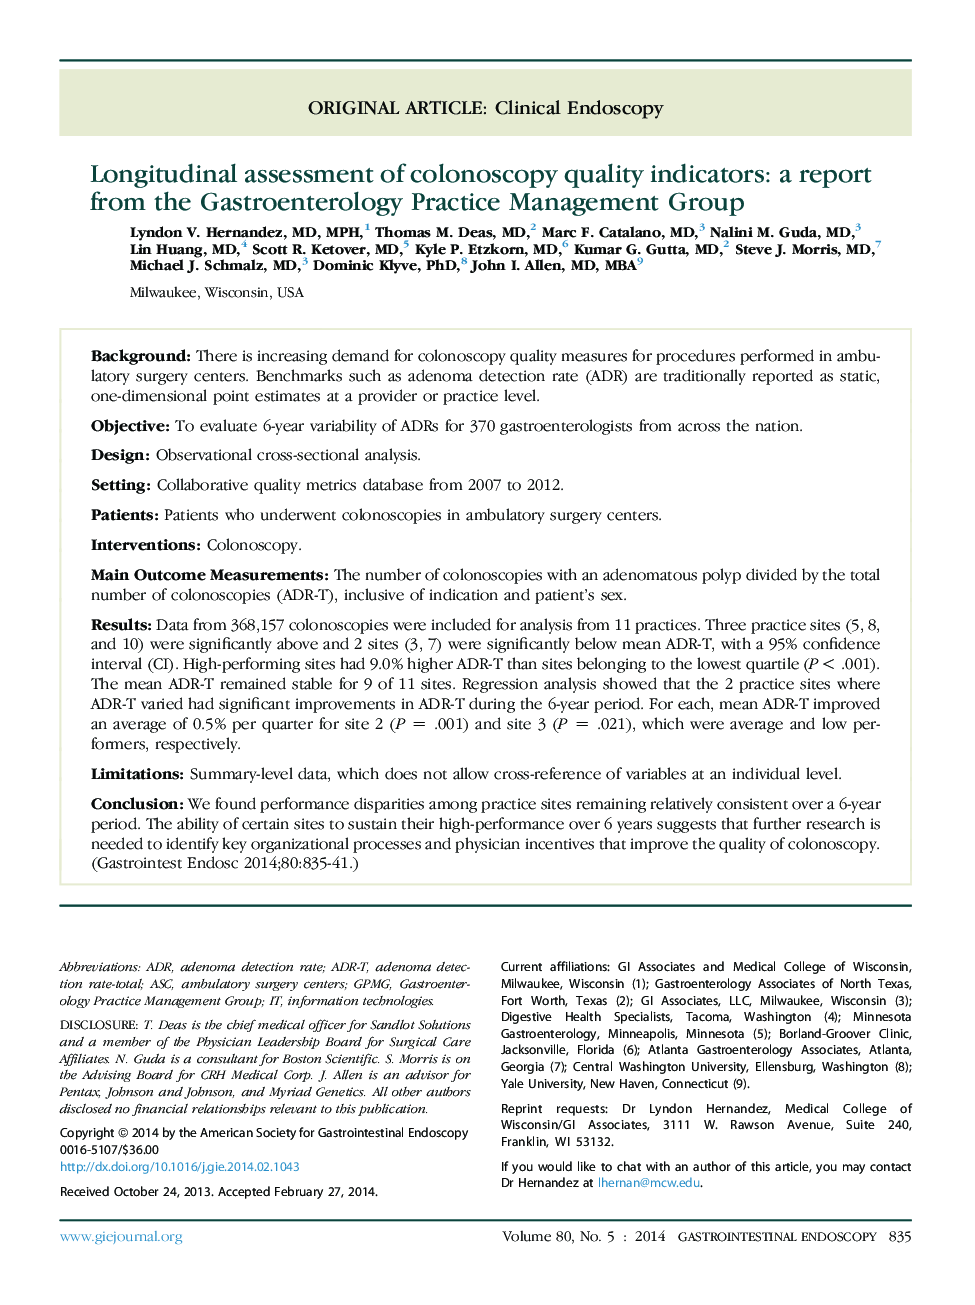 ارزیابی طولی شاخص های کیفیت کولونوسکوپی: گزارش گروه مدیریت عمل گاسترواندرولوژی 